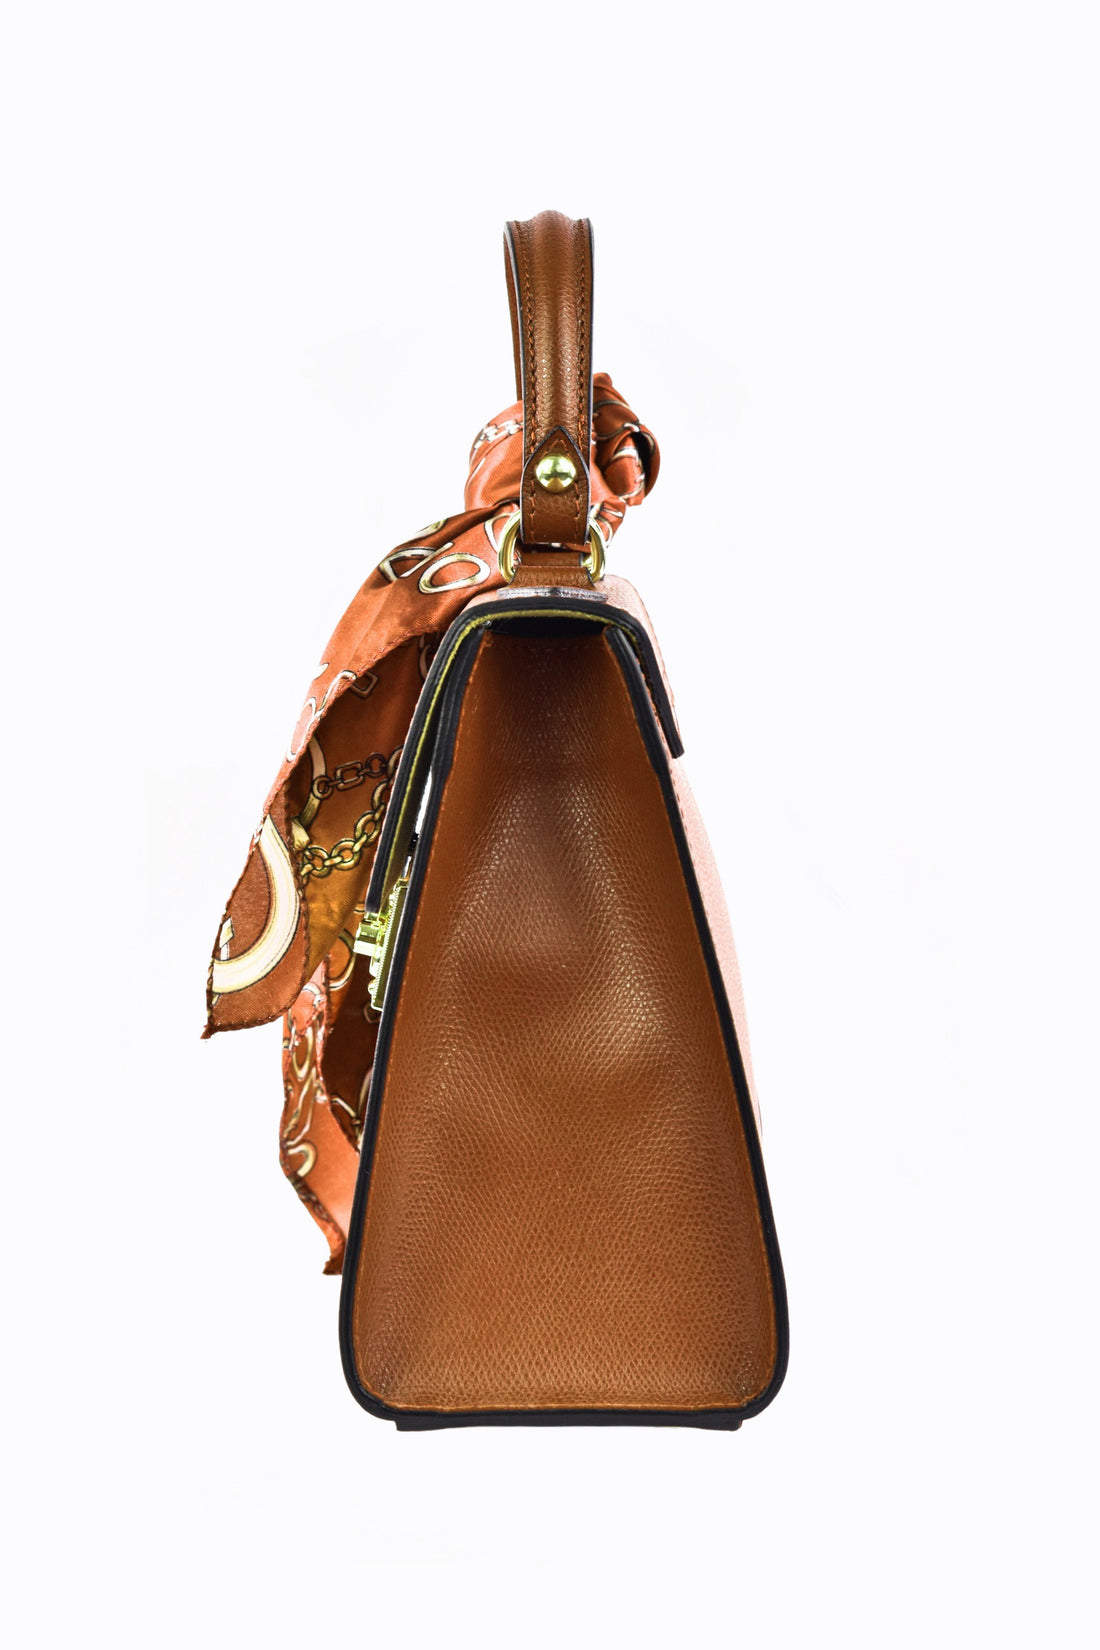 Marigold bag in Cuoio saffiano leather